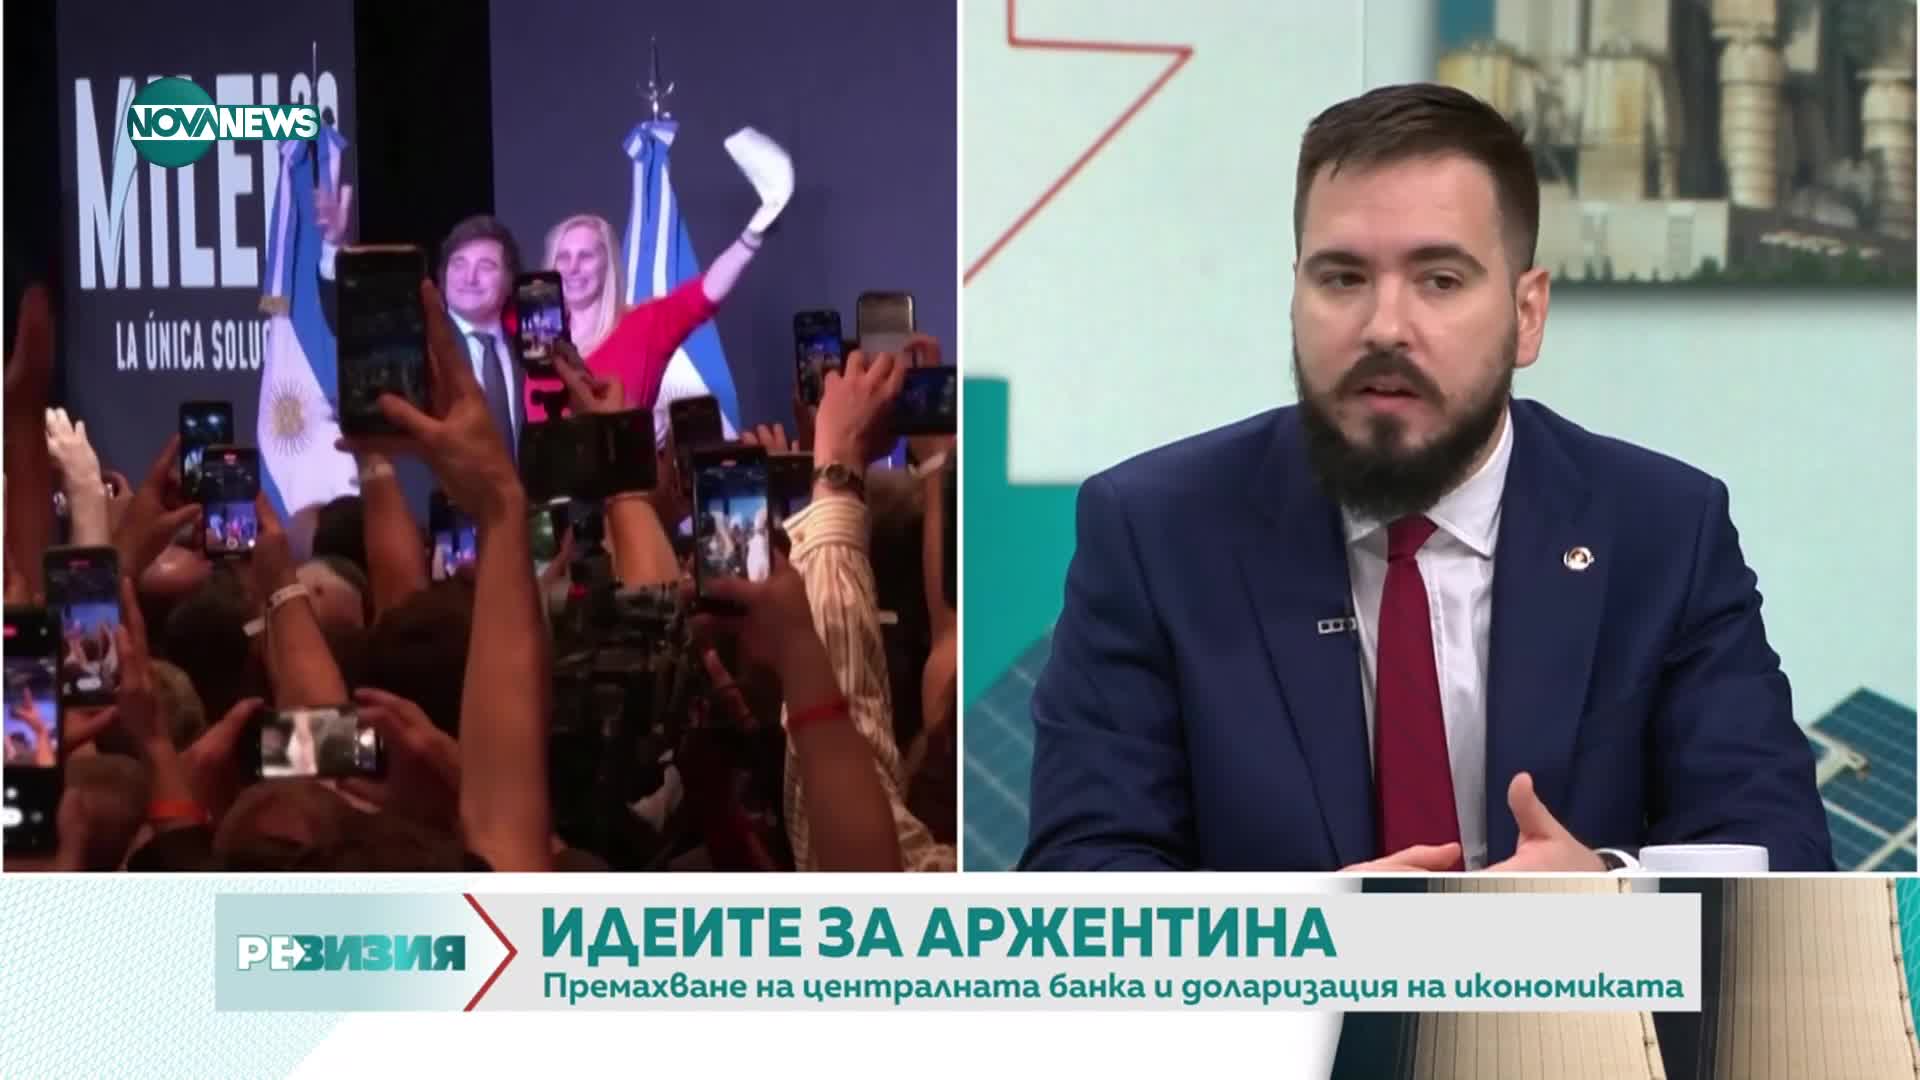 Стоян Панчев: Обръщаме се към либертарианството само при голяма криза